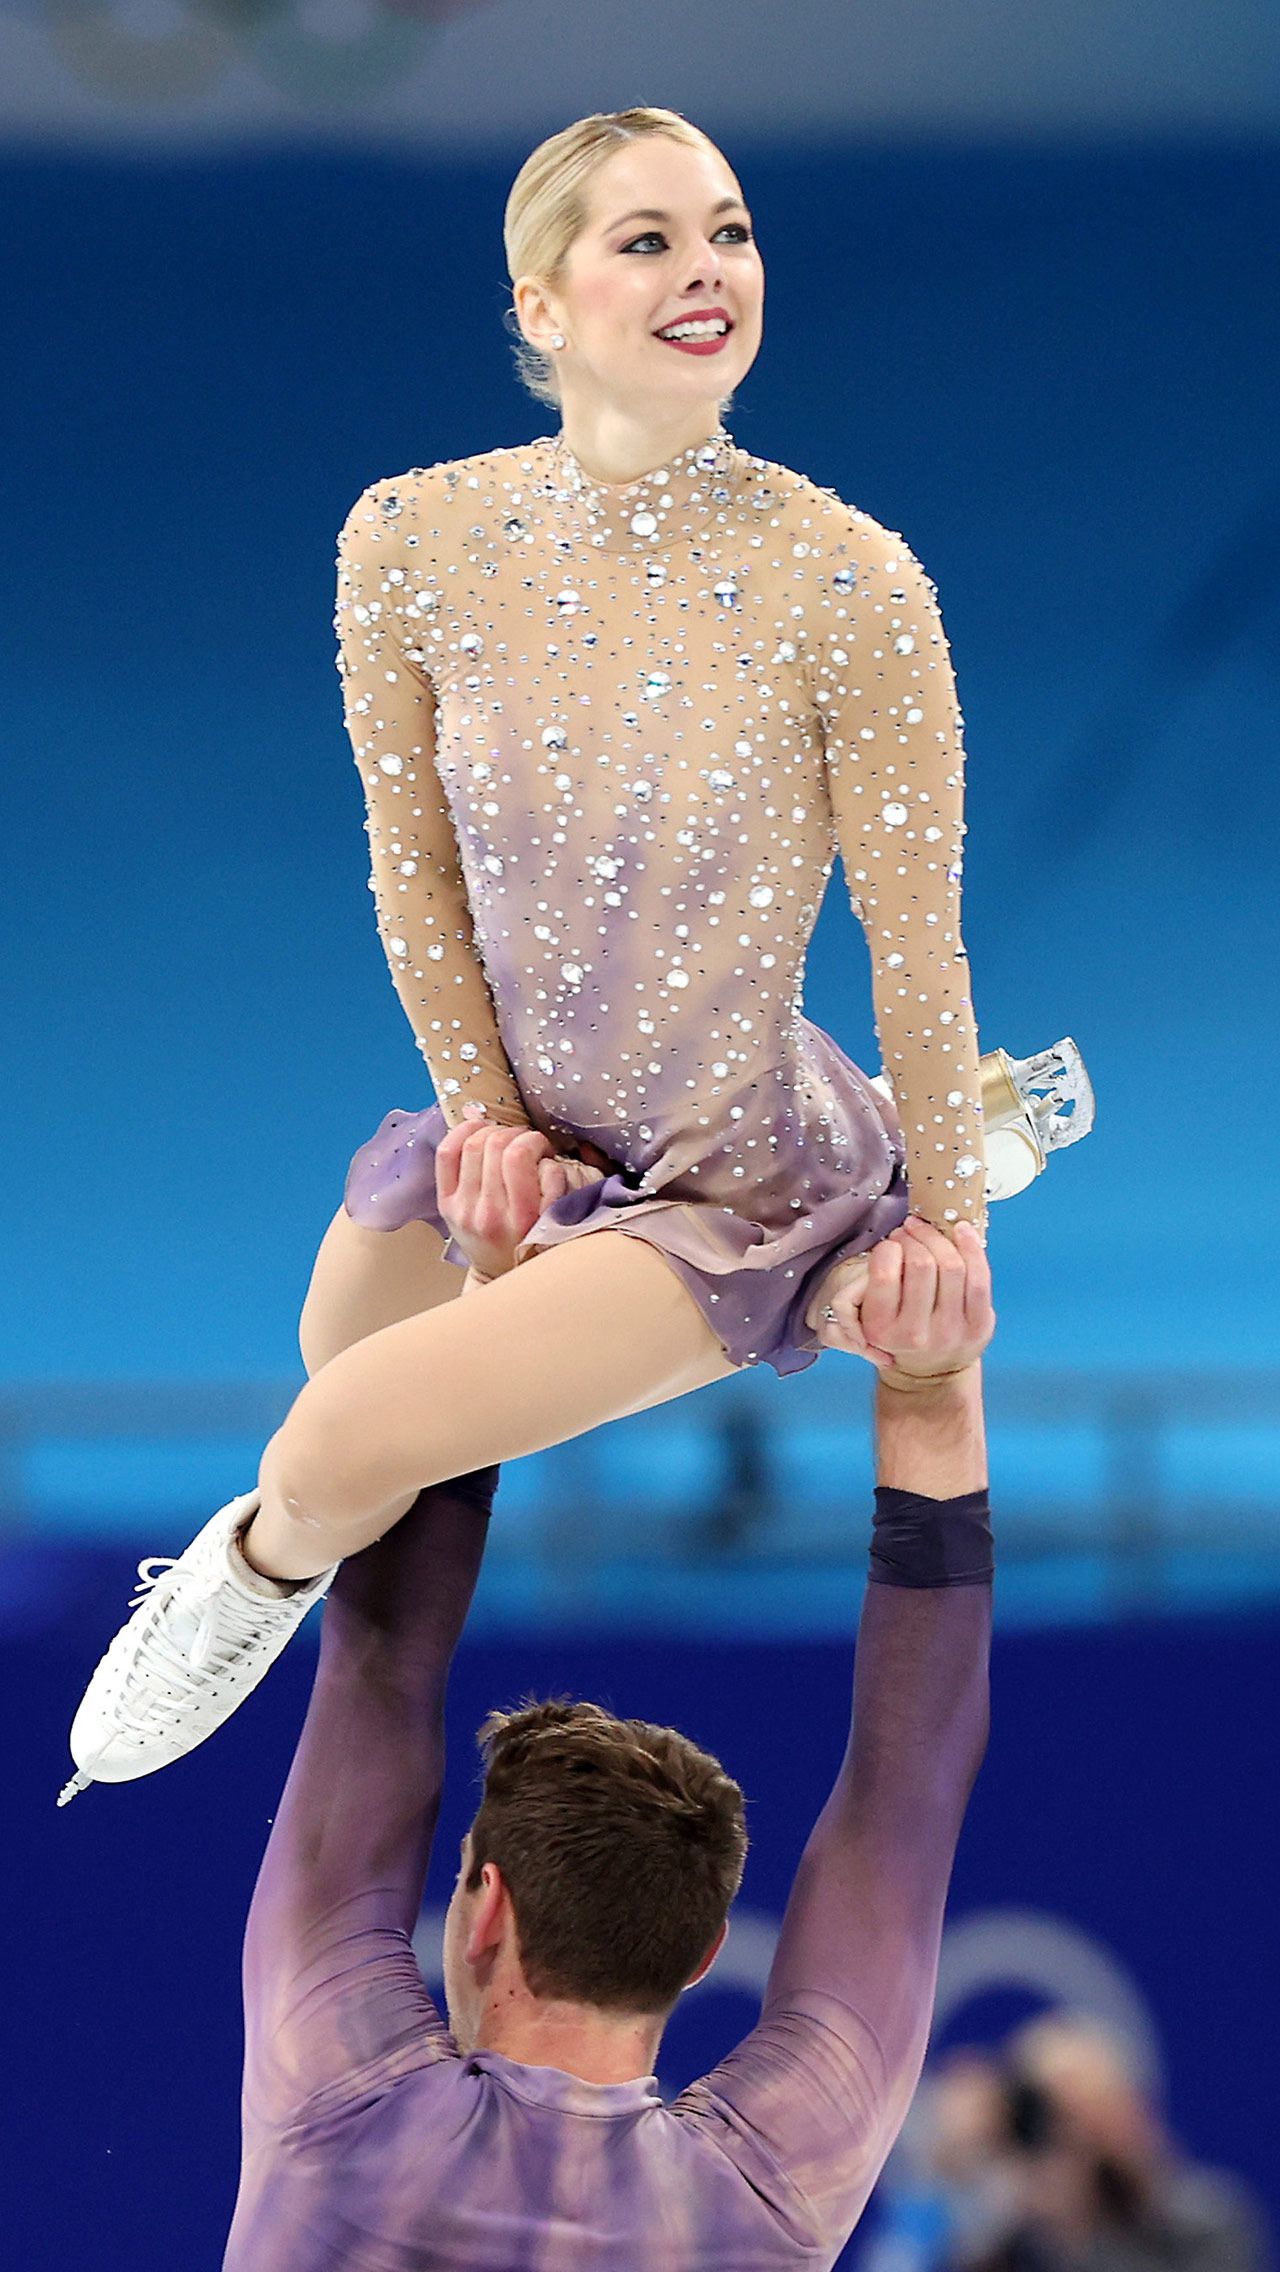 Впоследствии Книрим едко ответила Валиевой, давшей комментарий по поводу международного бана: «Жаль, что мне всё ещё приходится ждать, когда я получу свою олимпийскую медаль».